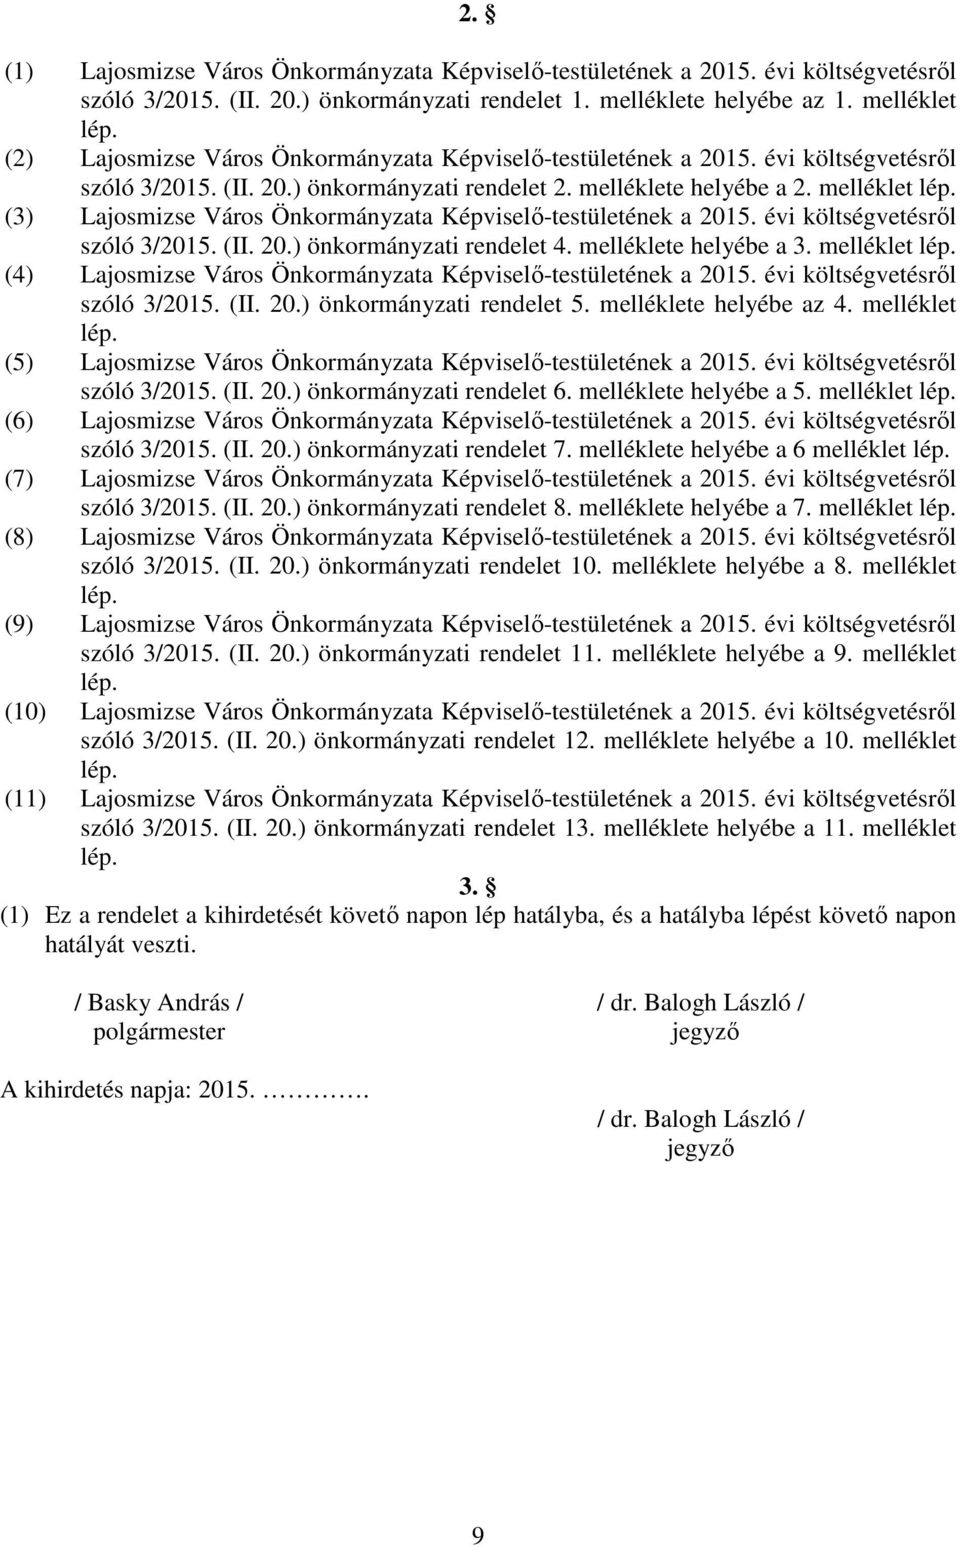 (3) Lajosmizse Város Önkormányzata Képviselı-testületének a 2015. évi költségvetésrıl szóló 3/2015. (II. 20.) önkormányzati rendelet 4. melléklete helyébe a 3. melléklet lép.